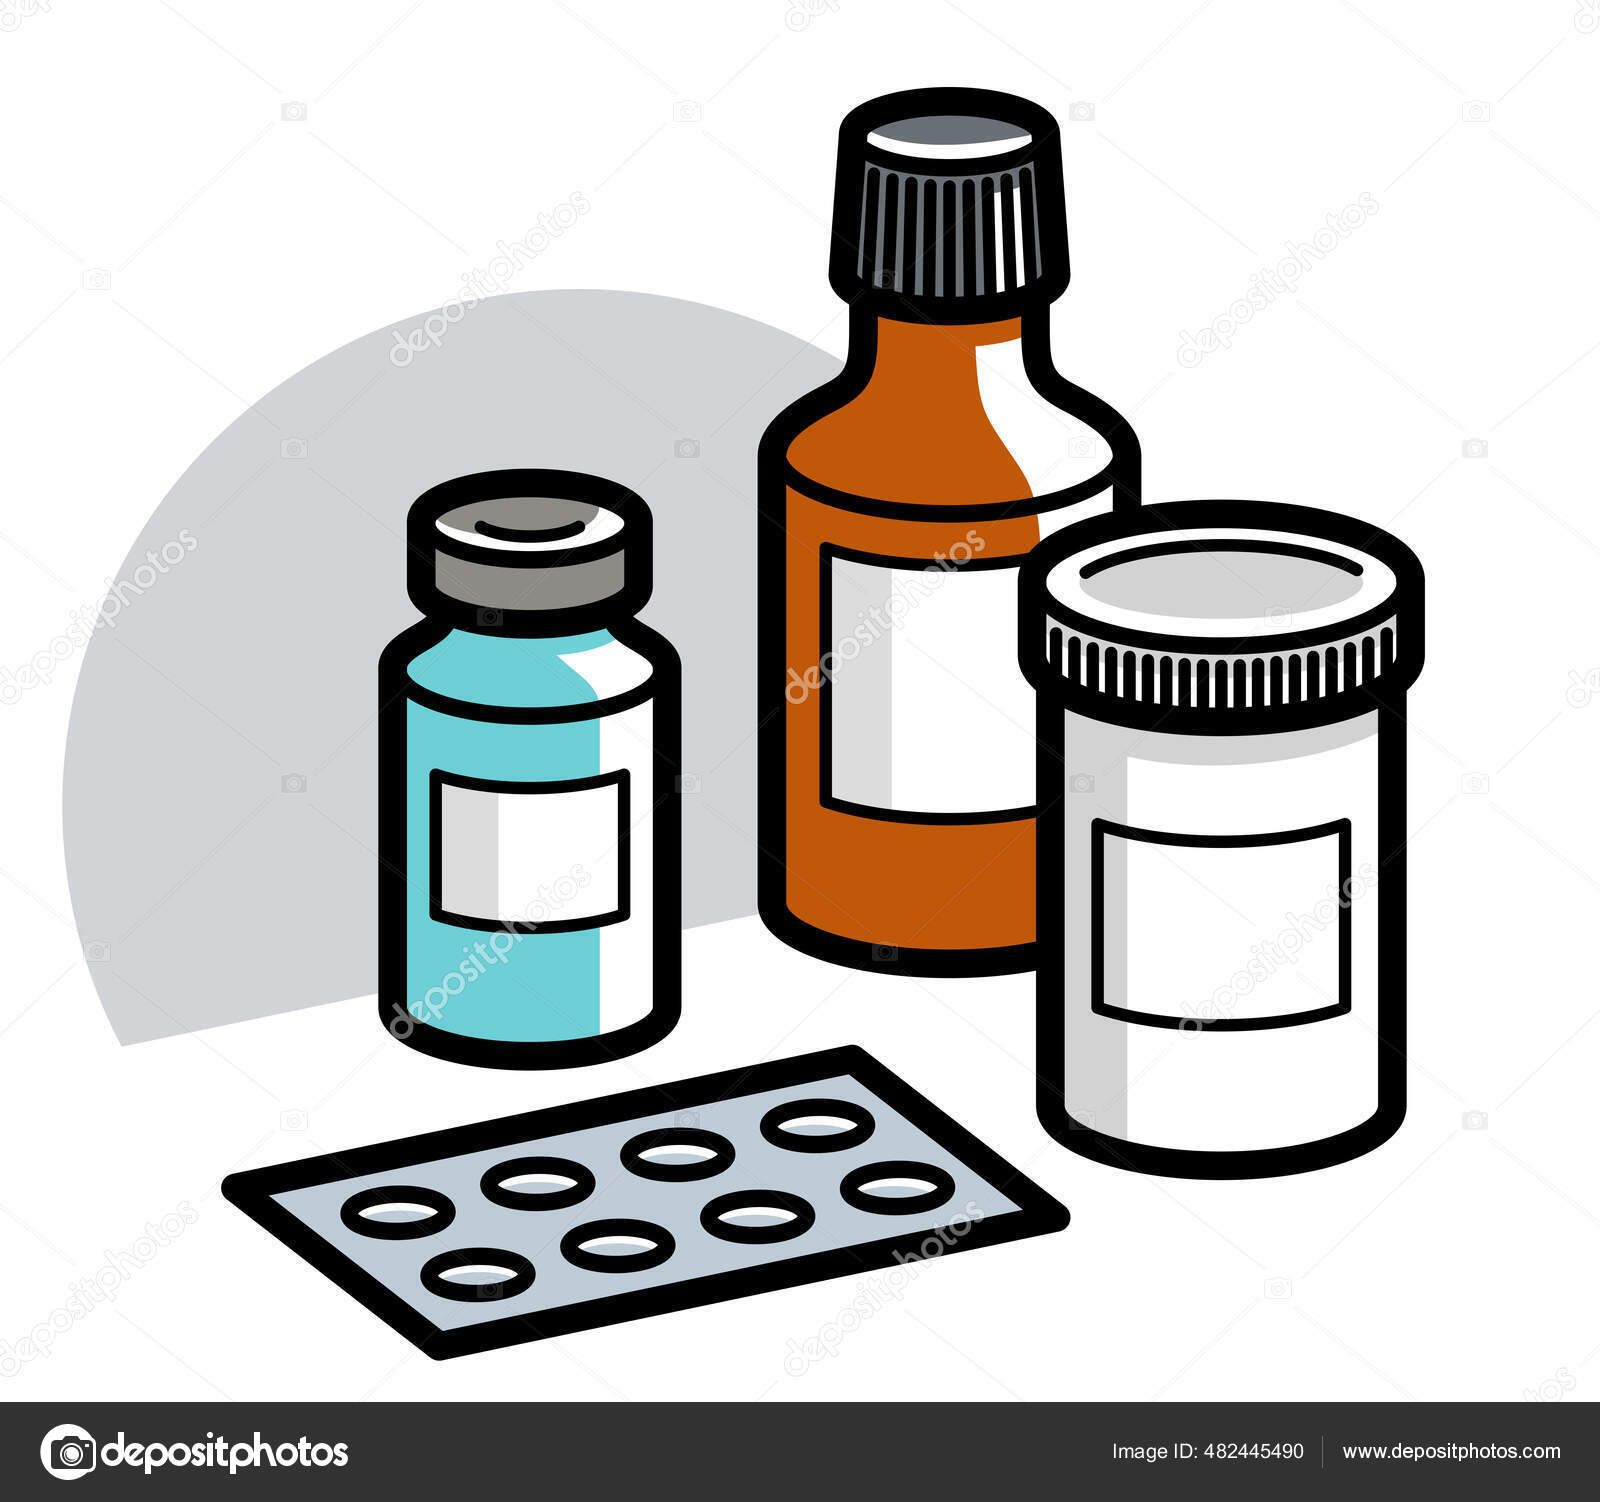 ícone linear do frasco de comprimidos. medicamentos. ilustração de